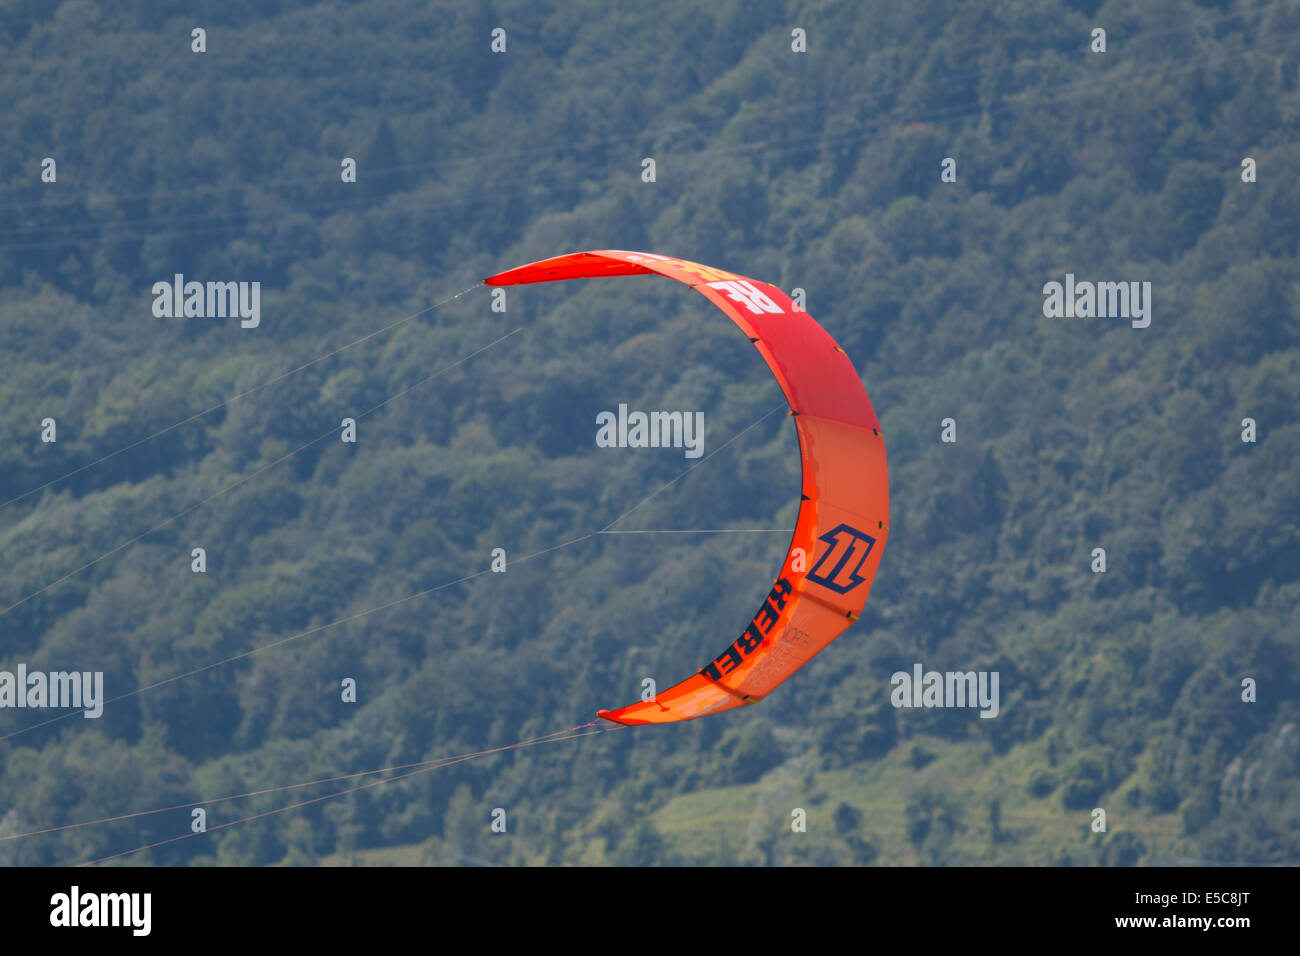 Lac DE SANTA CROCE, ITALIE - 13 juillet : voile de kitesurf sur le lac de Santa Croce, Castelfranco Veneto, Padova, Italie Banque D'Images